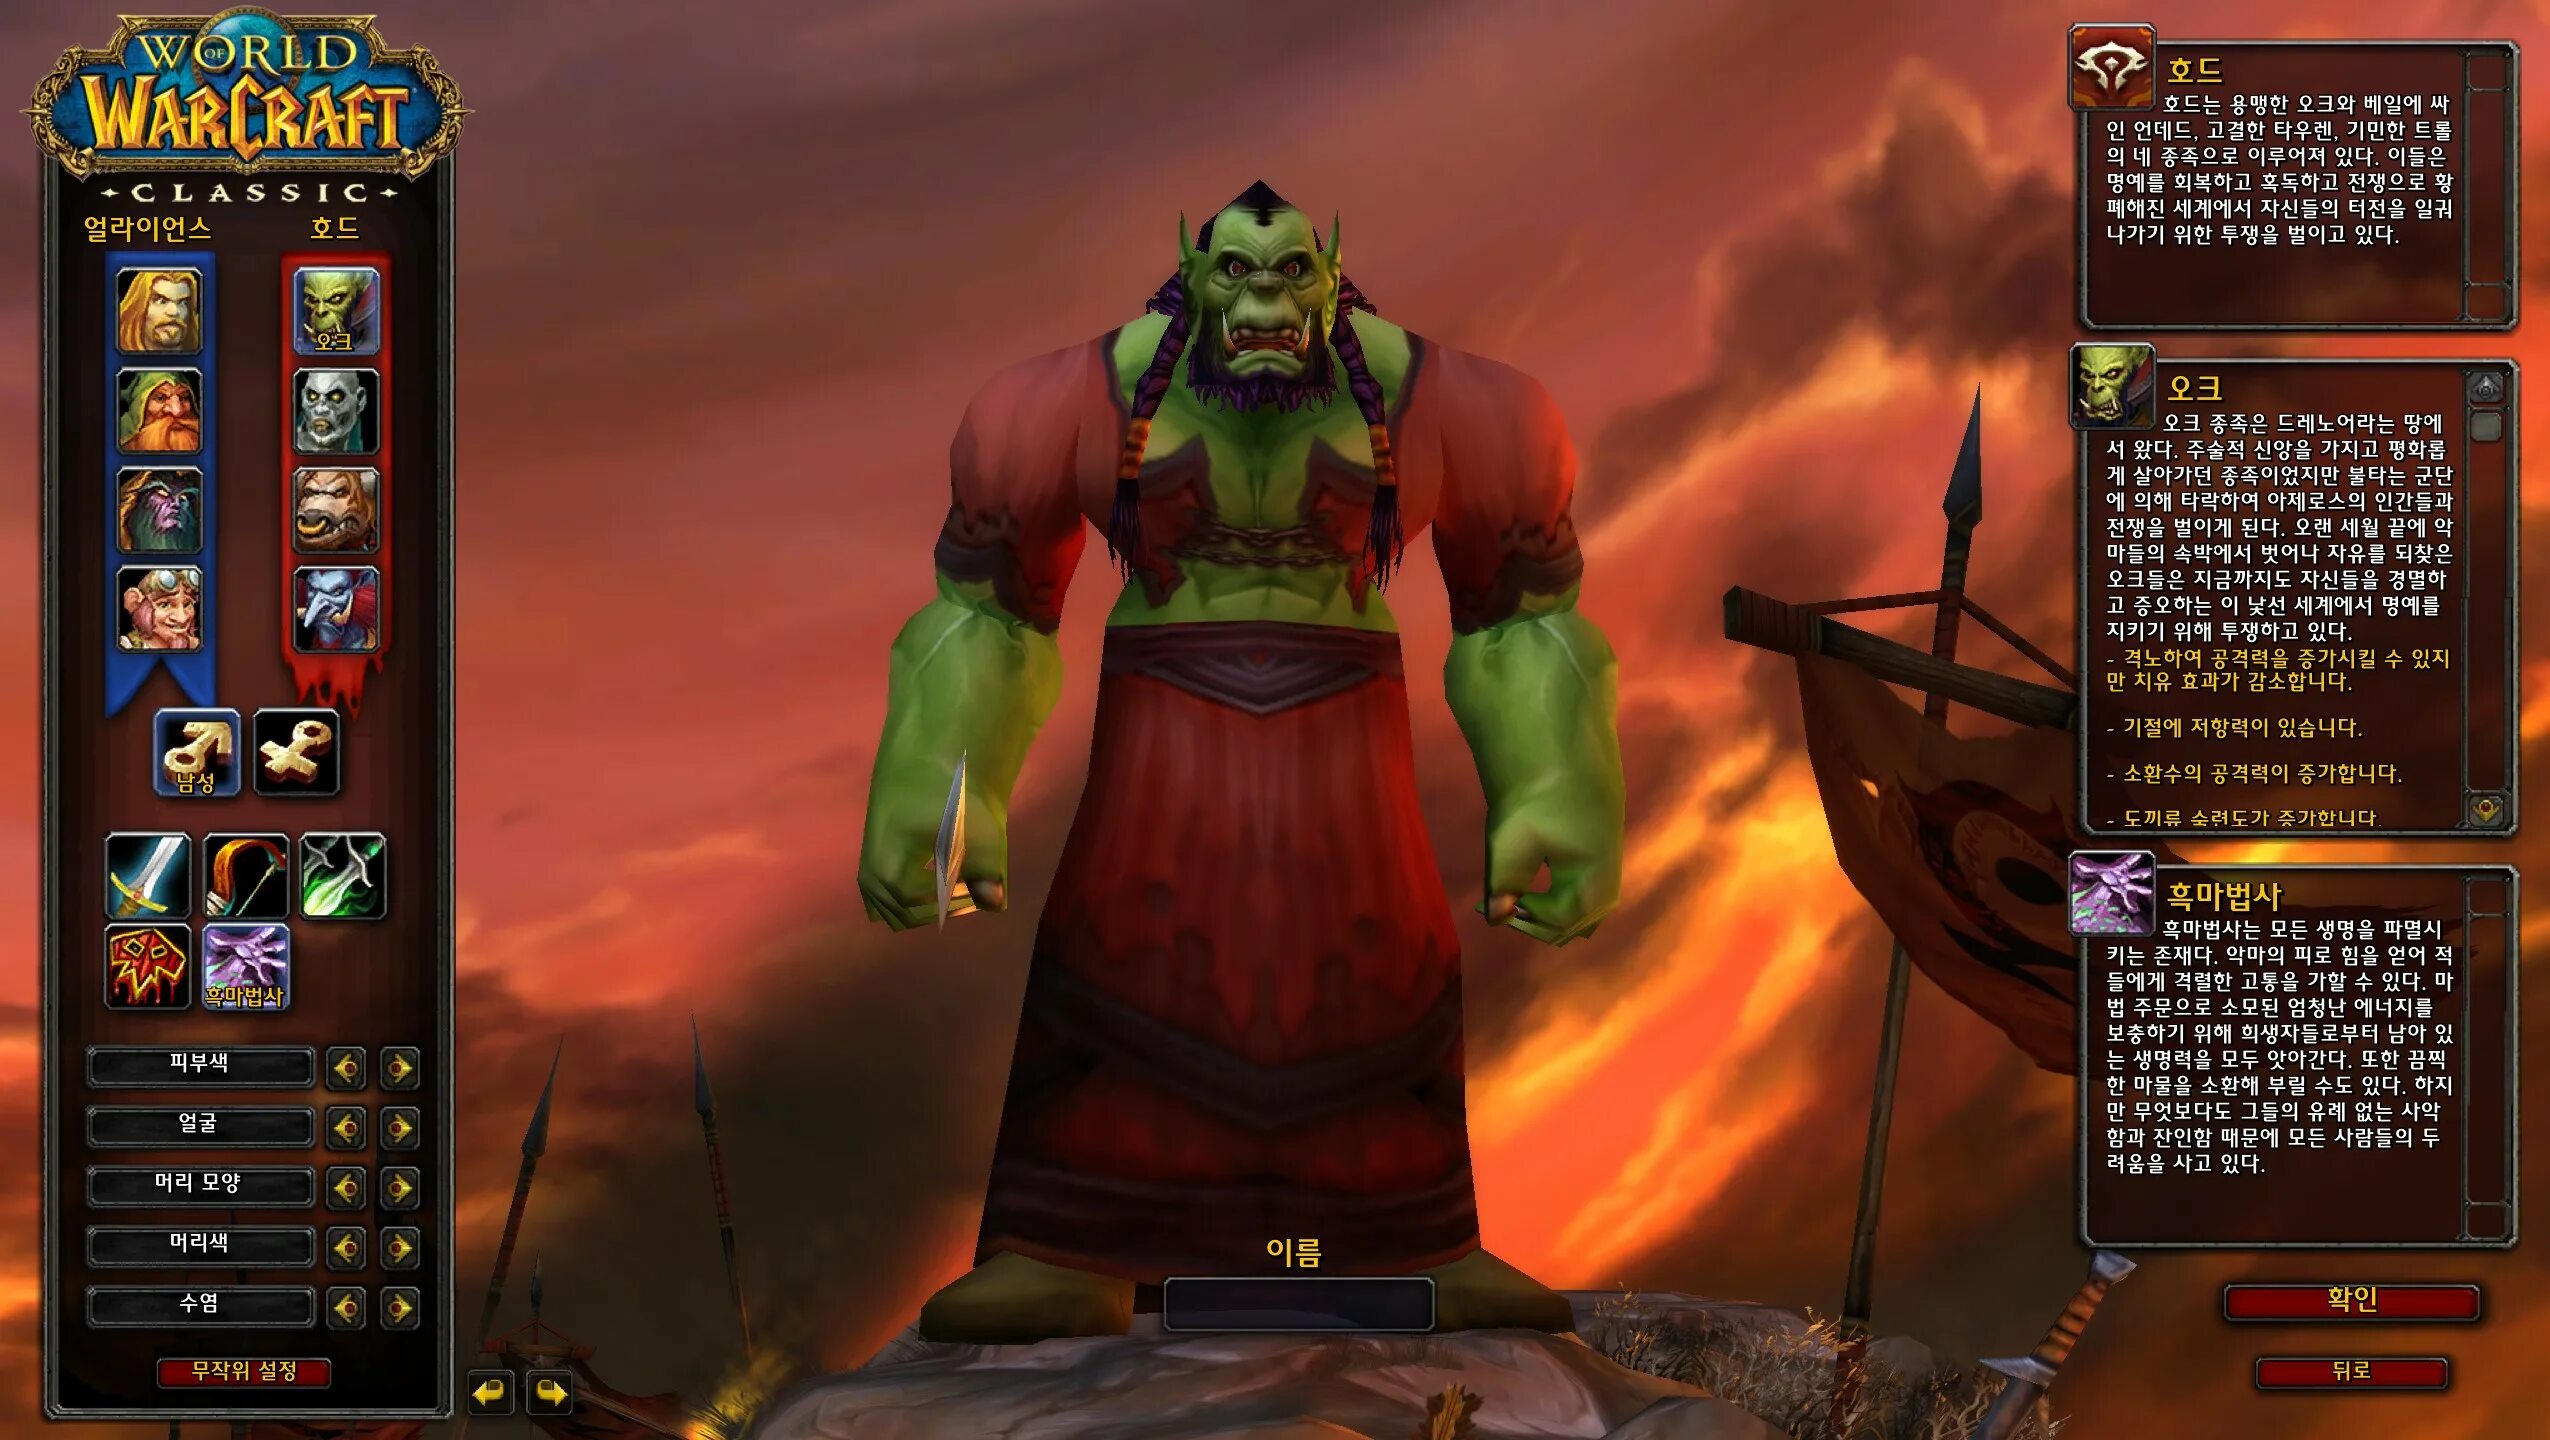 Оф сайт варкрафта. Ворлд варкрафт Классик. Варкрафт Классик игра. Wow Classic 1.12.1. World of Warcraft Classic персонажи.